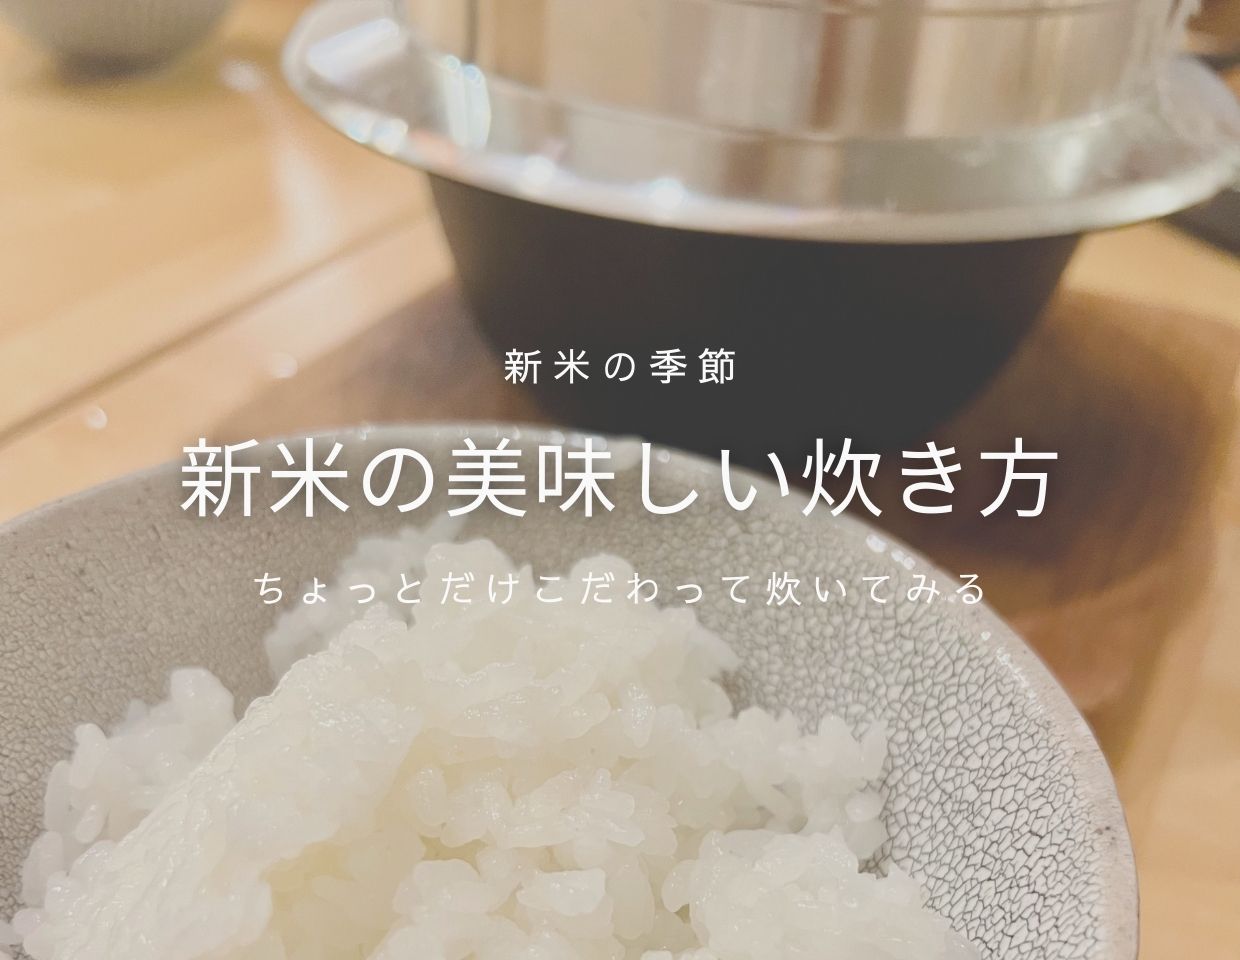 【お米loverに贈る】新米の炊き方のポイントとオススメの食べ方